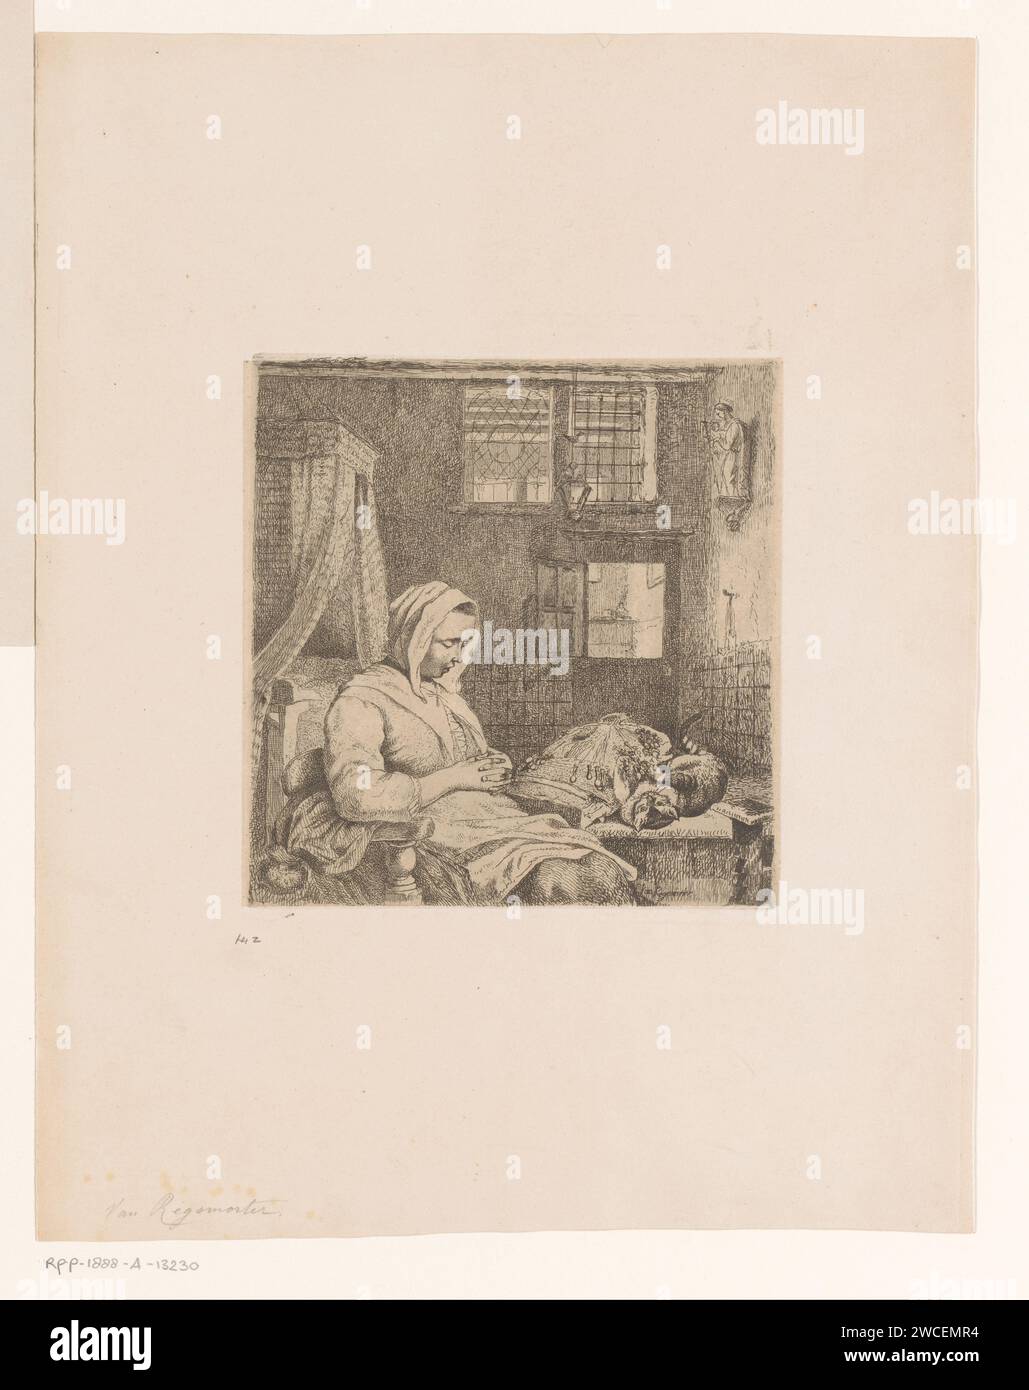 Travailleur de dentelle de sommeil dans un intérieur avec le chat sur la table, Ignatius Josephus van Regemorter, 1795 - 1873 papier imprimé. gravure du sommeil ; inconscience. cat. intérieur de la maison Banque D'Images